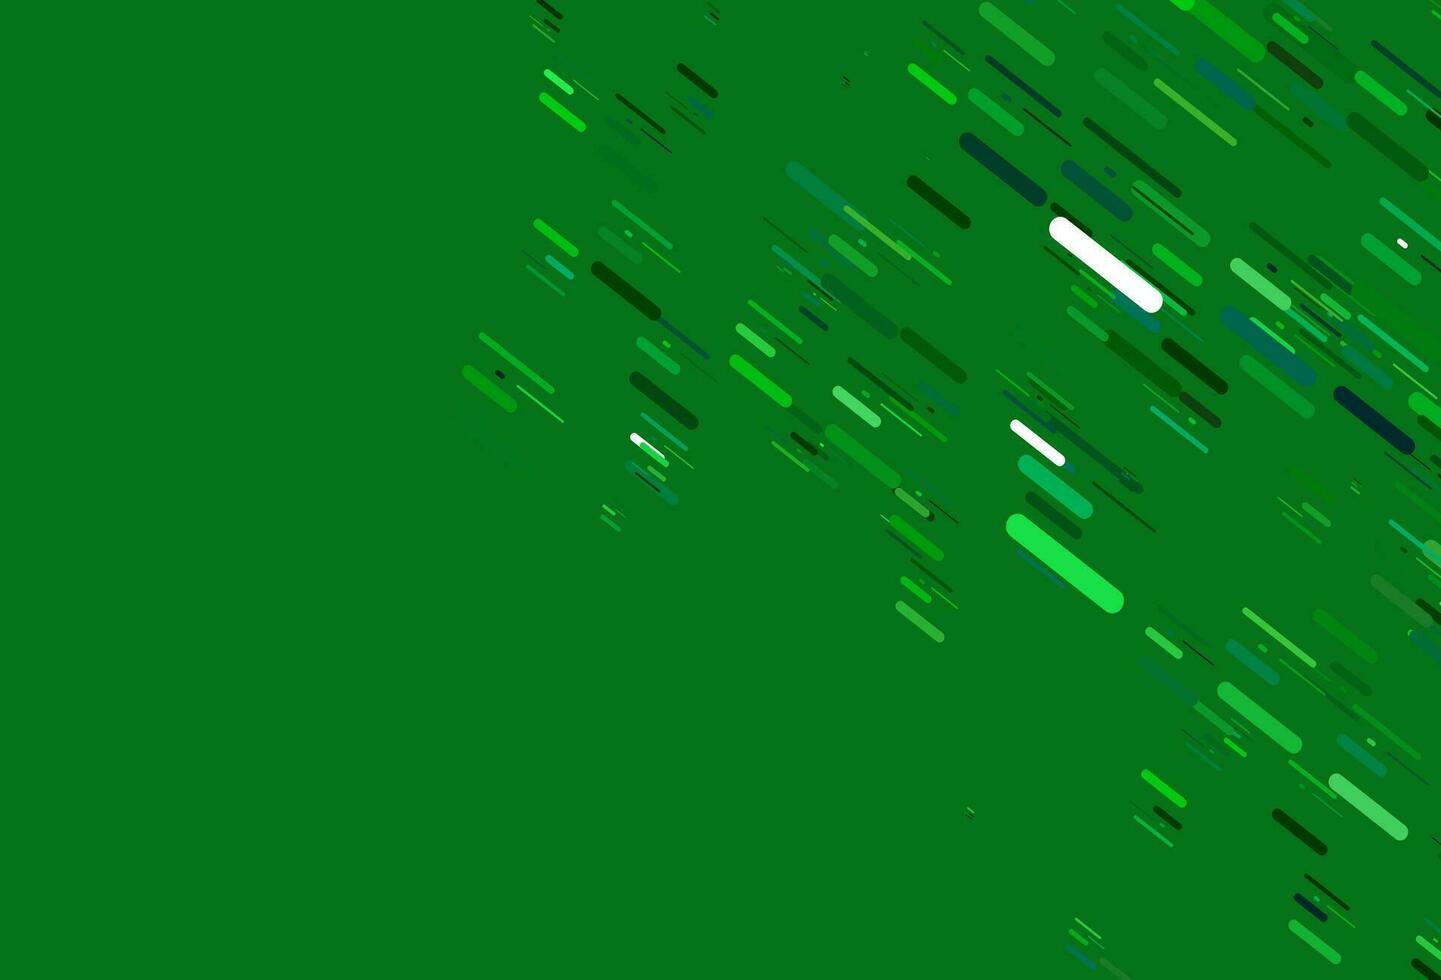 Telón de fondo de vector azul claro, verde con líneas largas.